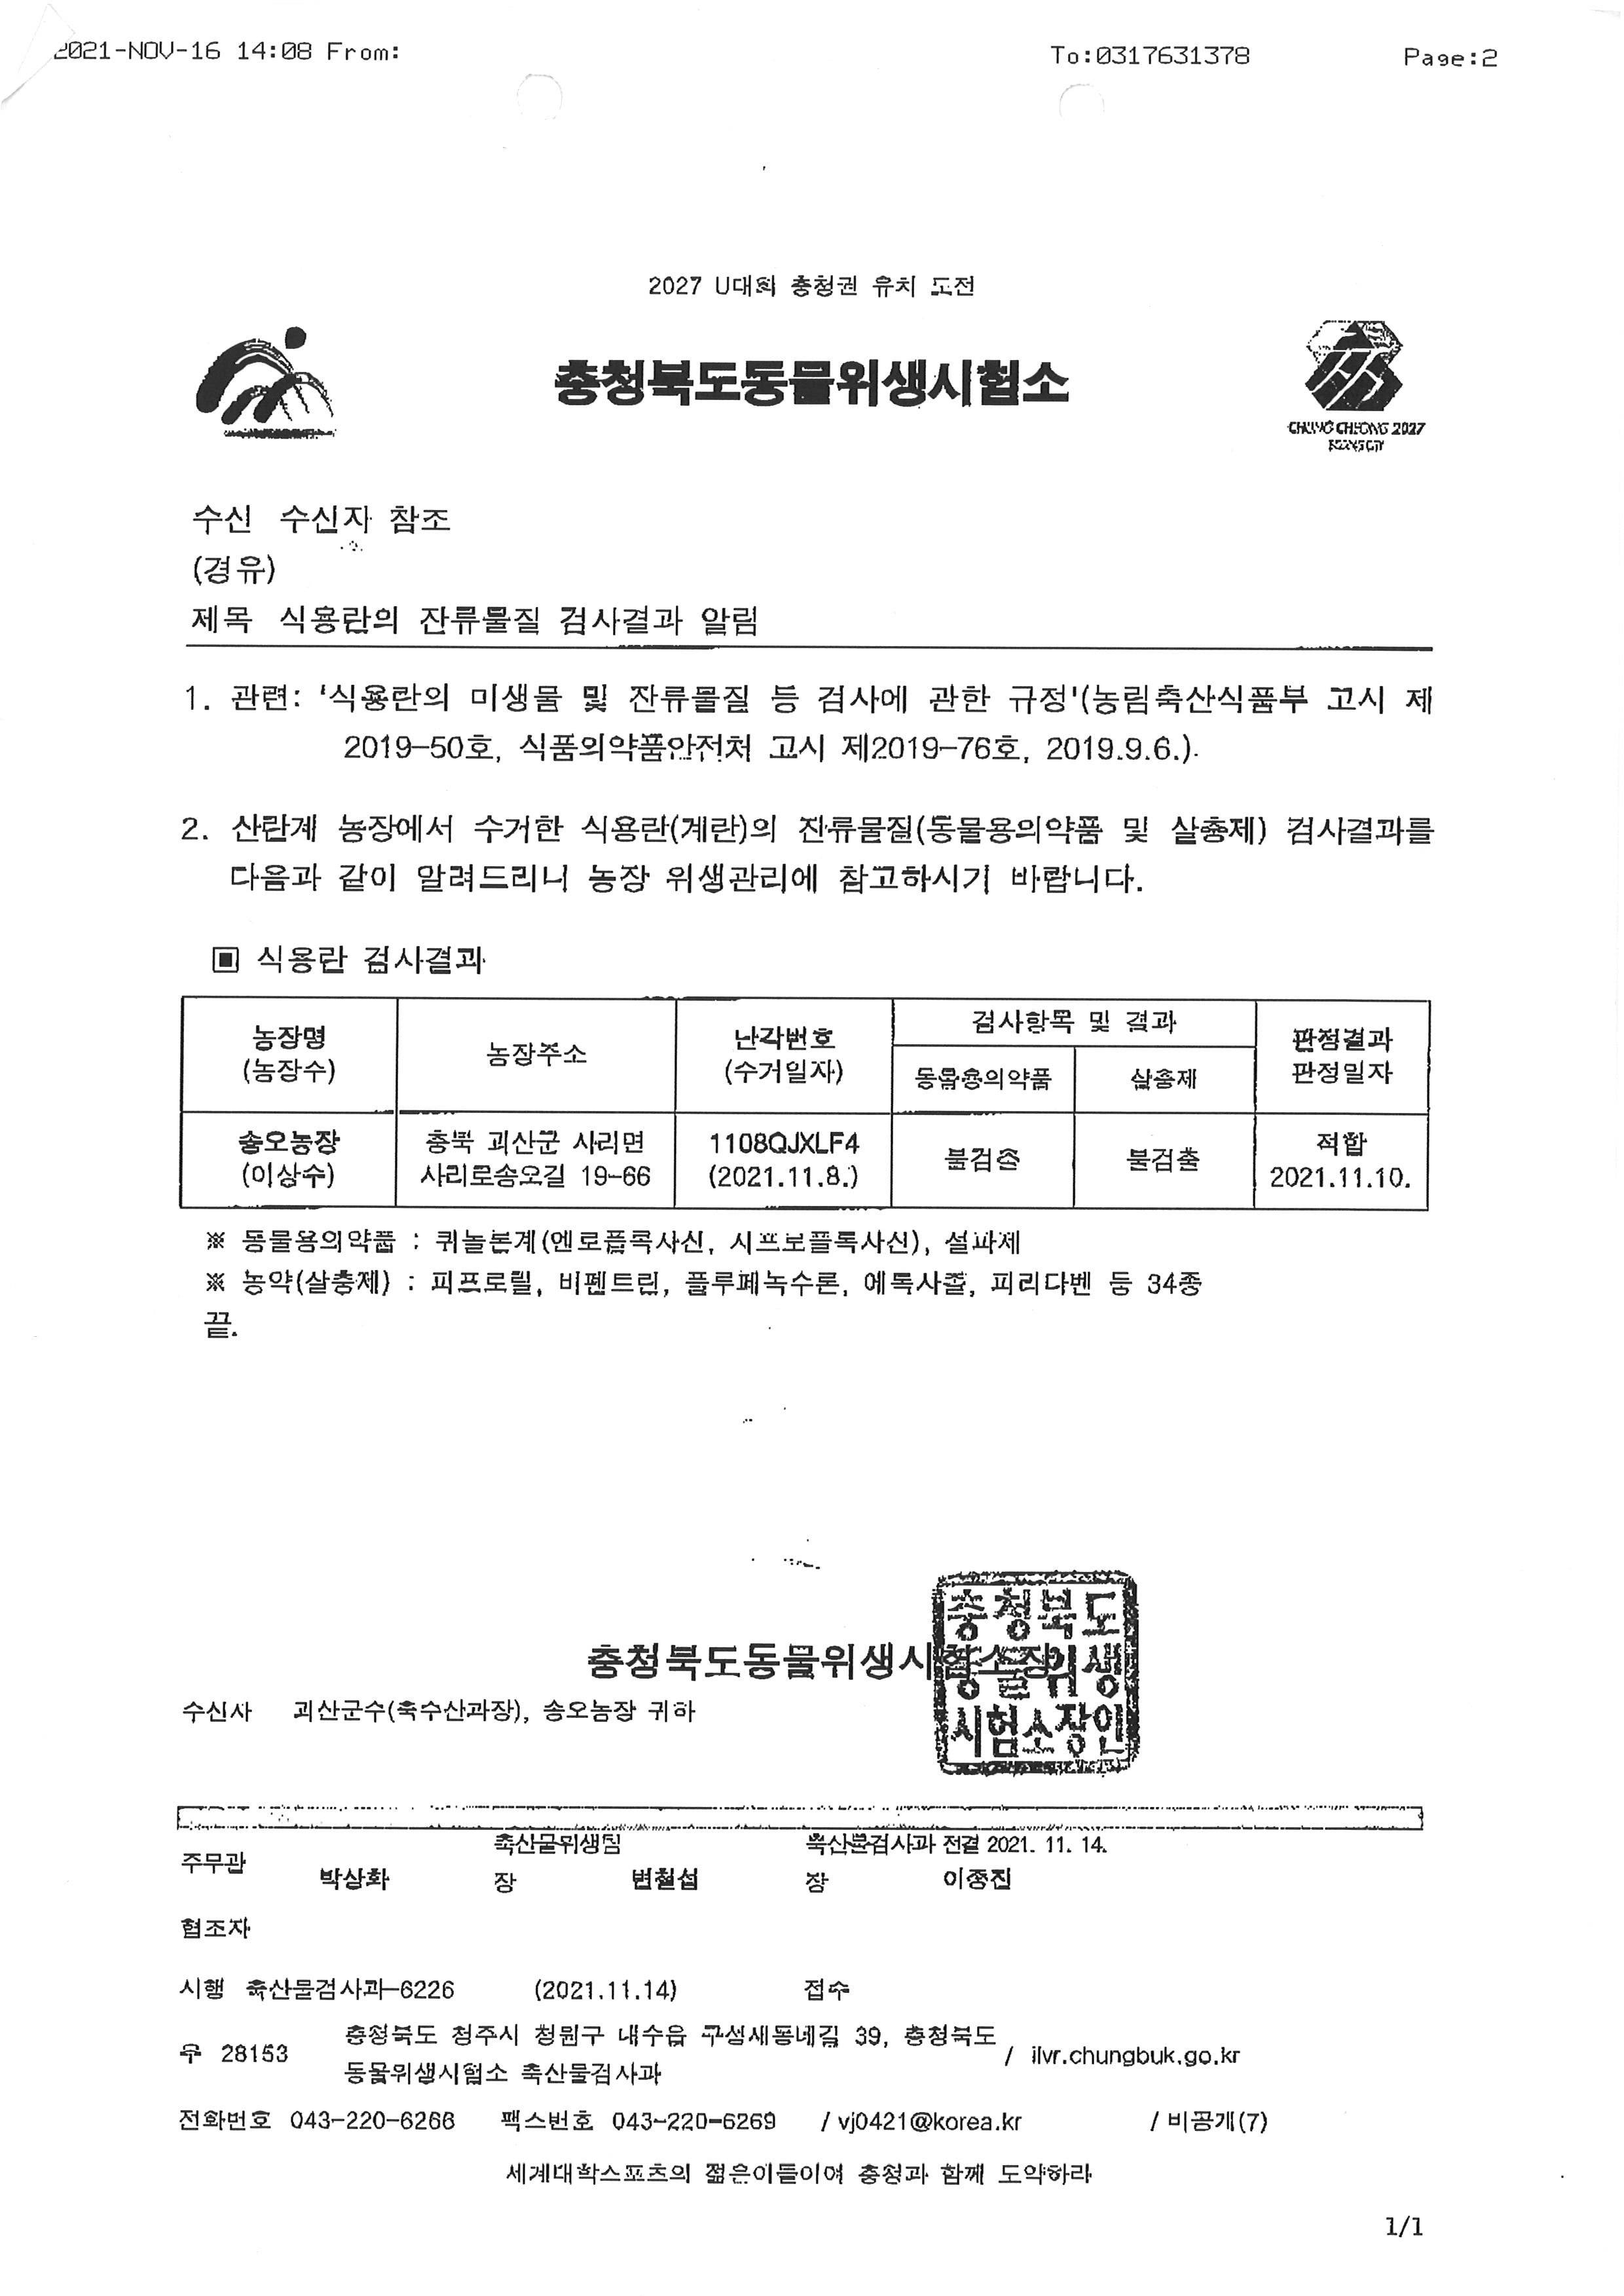 식용란검사성적서02_송오농장_20211110.jpg